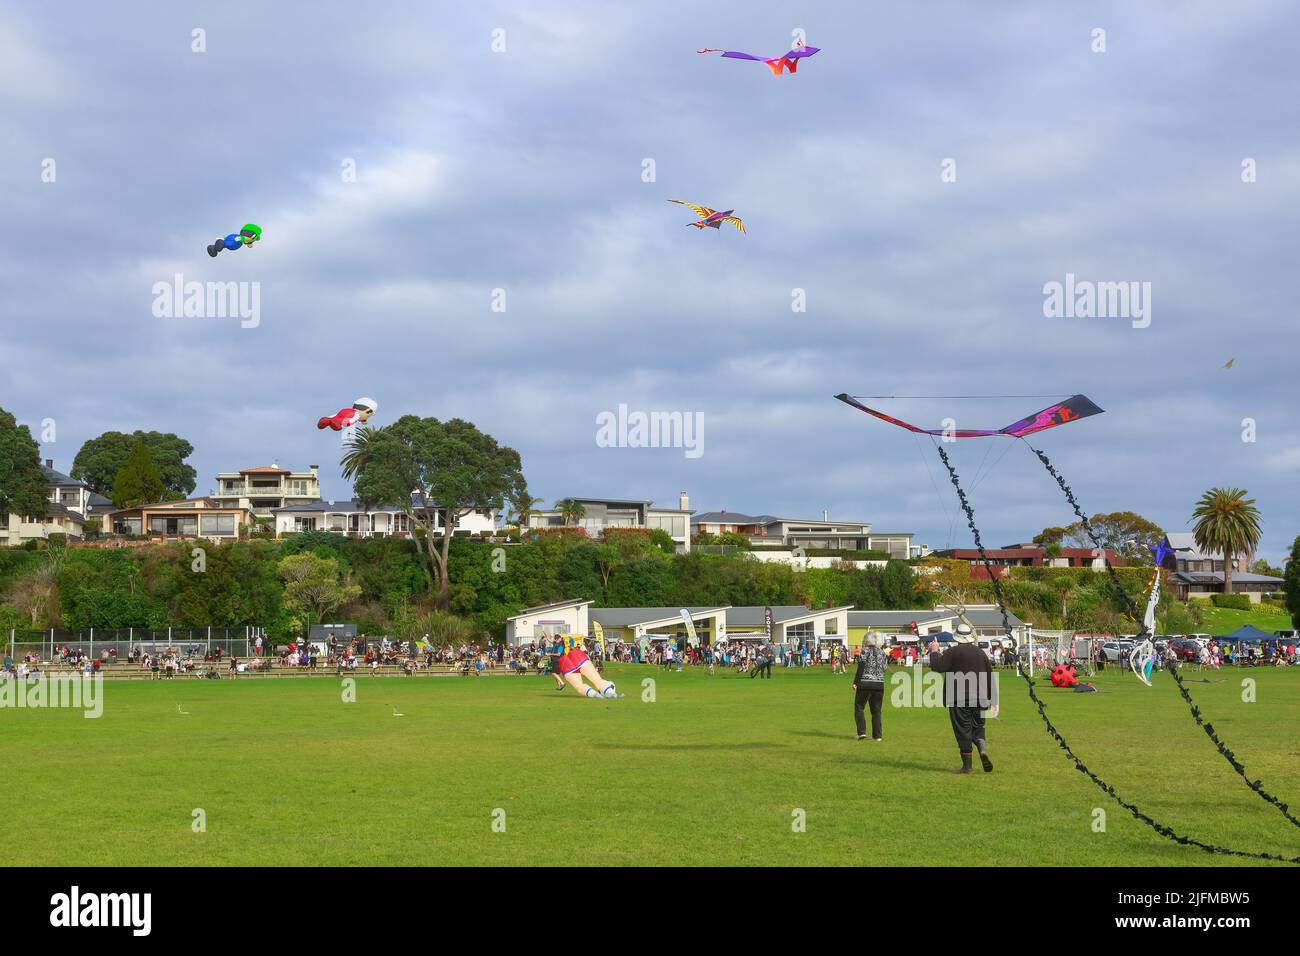 Menschen, die Drachen fliegen, um Matariki, das Maori-Neujahr, in einem Park in Tauranga, Neuseeland, zu feiern Stockfoto